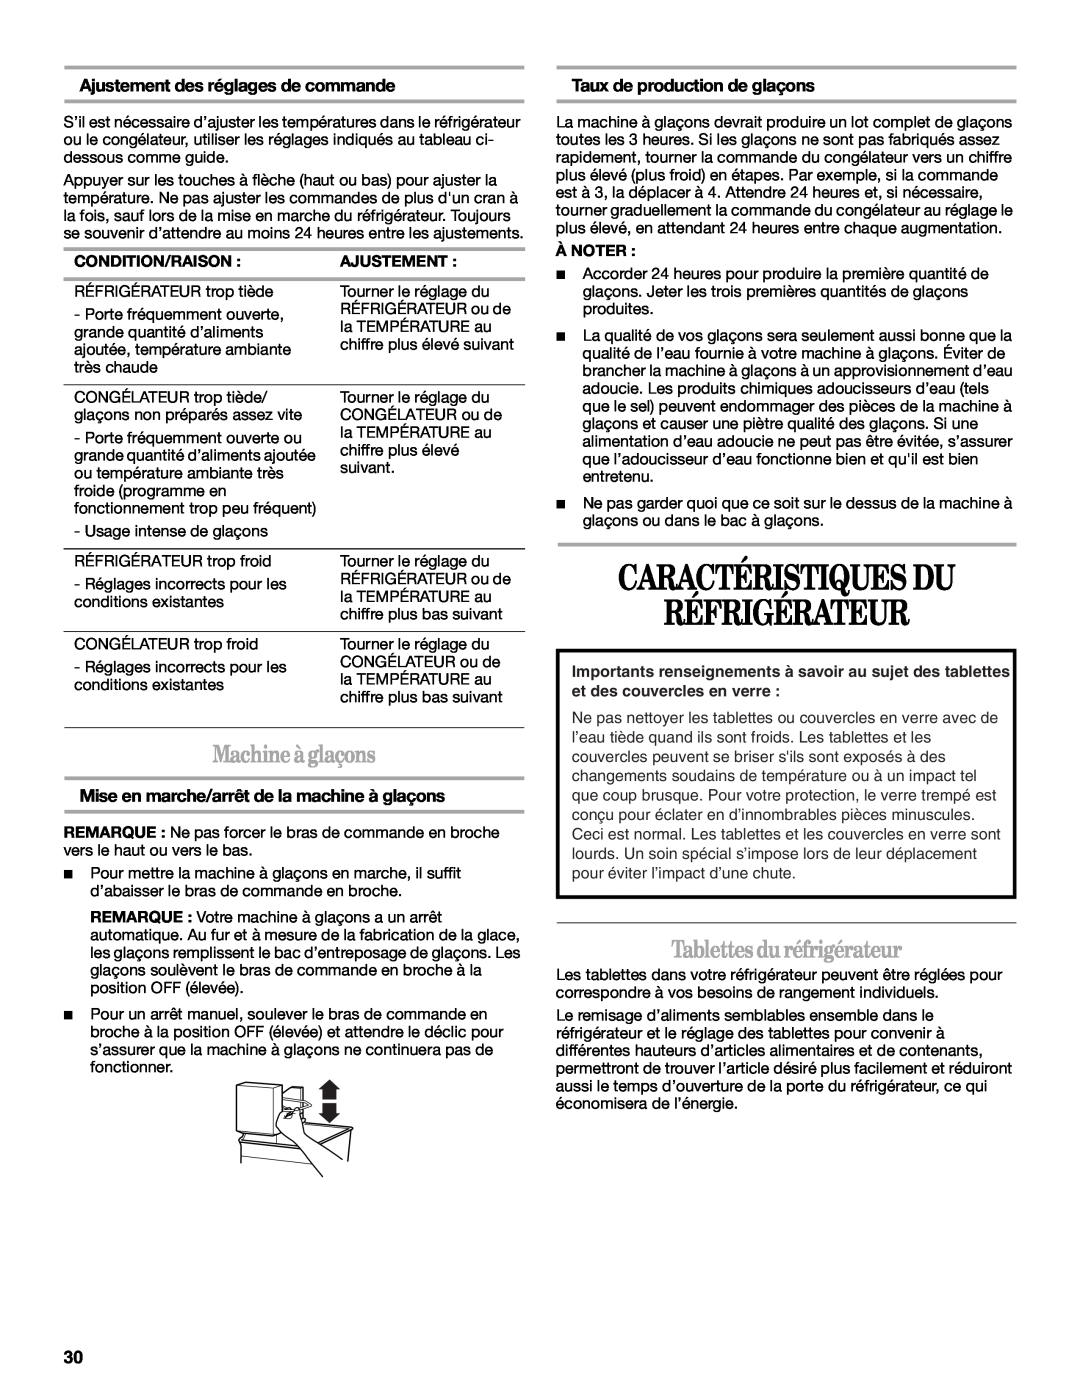 Whirlpool GB2SHDXPB00 manual Caractéristiques Du Réfrigérateur, Machineàglaçons, Tablettes duréfrigérateur 